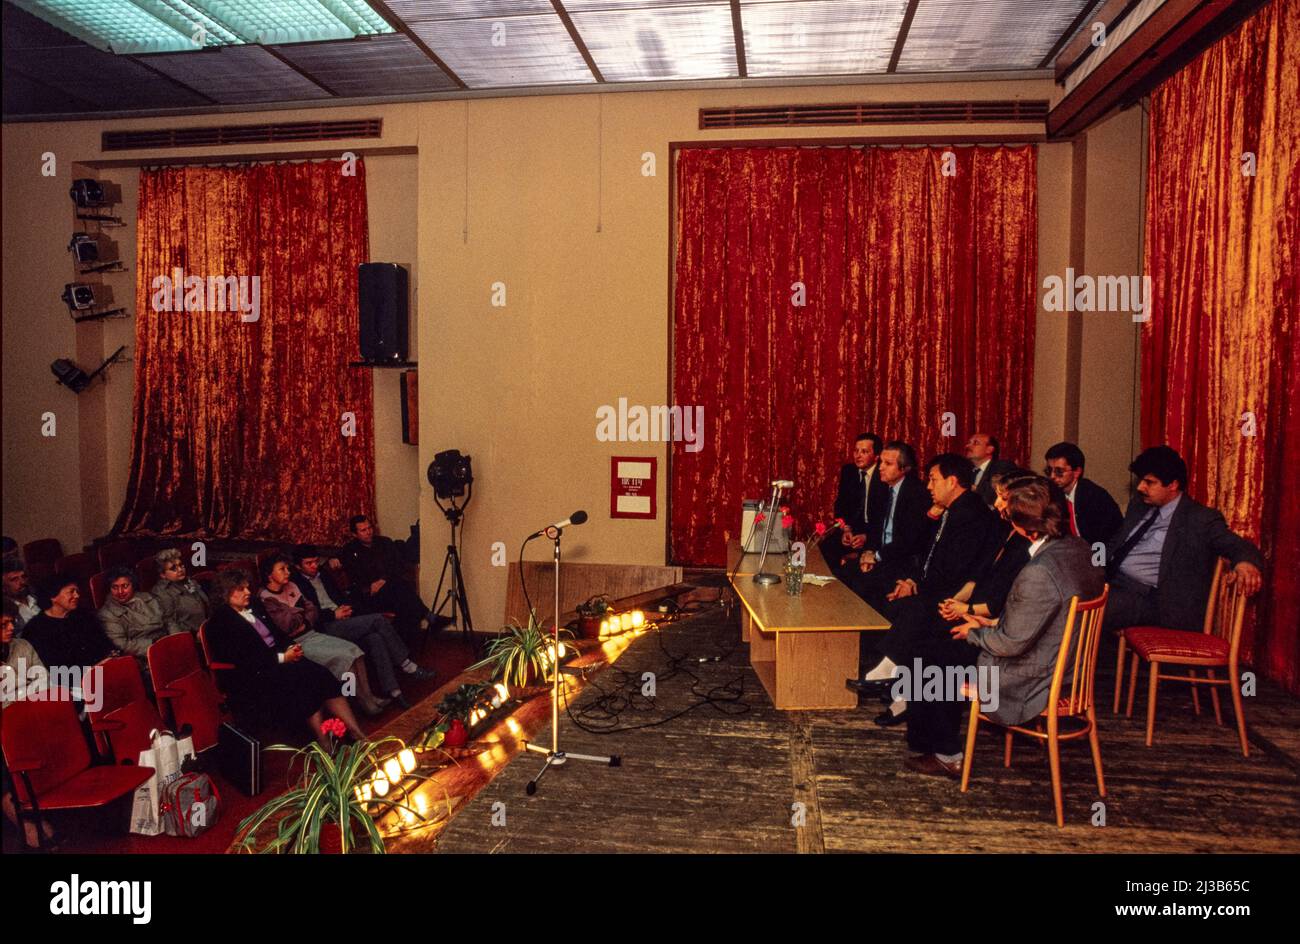 L'equipaggio video dell'unità criminale KGB incontra i lavoratori di una fabbrica di ingegneria per discutere il loro lavoro in un esercizio di PR e ascoltare le preoccupazioni della gente, Mosca, giugno 1990. Foto Stock